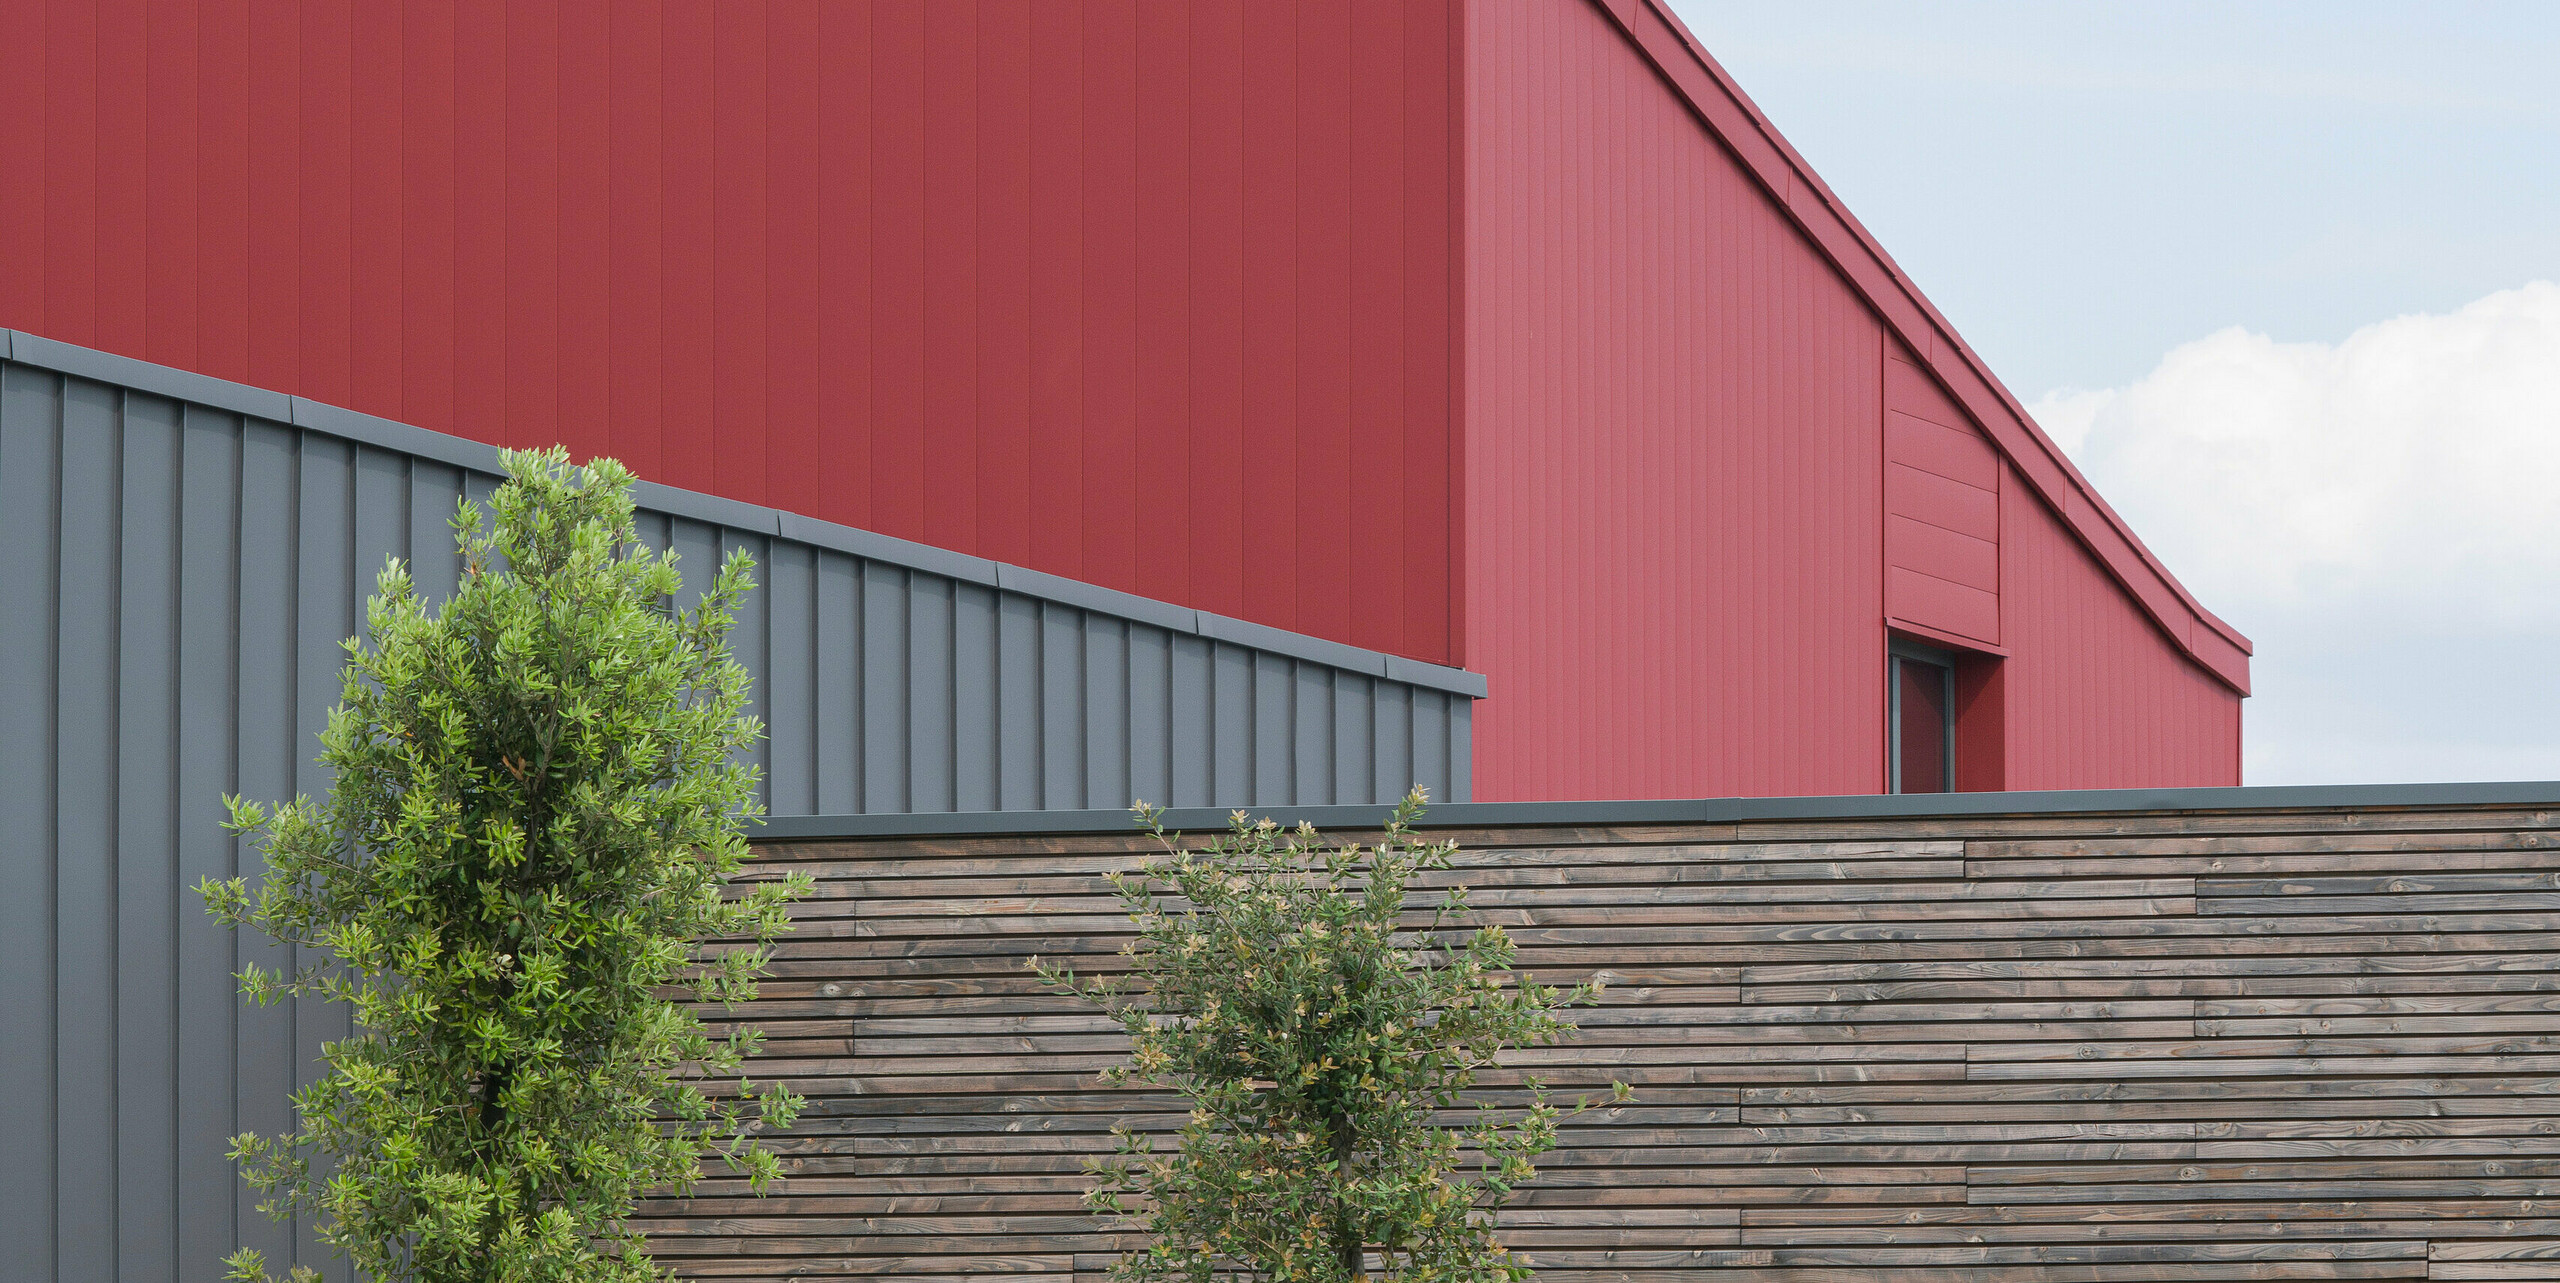 Ein modernes Gewerbegebäude mit einer auffälligen roten Aluminiumfassade. Die Farbwahl spricht eine klare architektonische Sprache. Die strukturierte, graue Aluminiumverkleidung bildet einen sanften Kontrast zum kräftigen Rot. Die langlebige Aluminiumverkleidung PREFALZ an der Fassade und am Dach sorgt für idealen Schutz vor jeder Witterung. Die ergänzende Naturholzverkleidung vermittelt Wärme und Natürlichkeit. Vor dem Gebäude sind junge Bäume zu sehen, die sorgfältig mit Stützpfählen befestigt sind. Ein gepflegtes Blumenbeet fügt zusätzliche Farbe und Leben hinzu. Eine Elektrofahrzeug-Ladestation im Vordergrund zeigt das Engagement für nachhaltige Energielösungen.